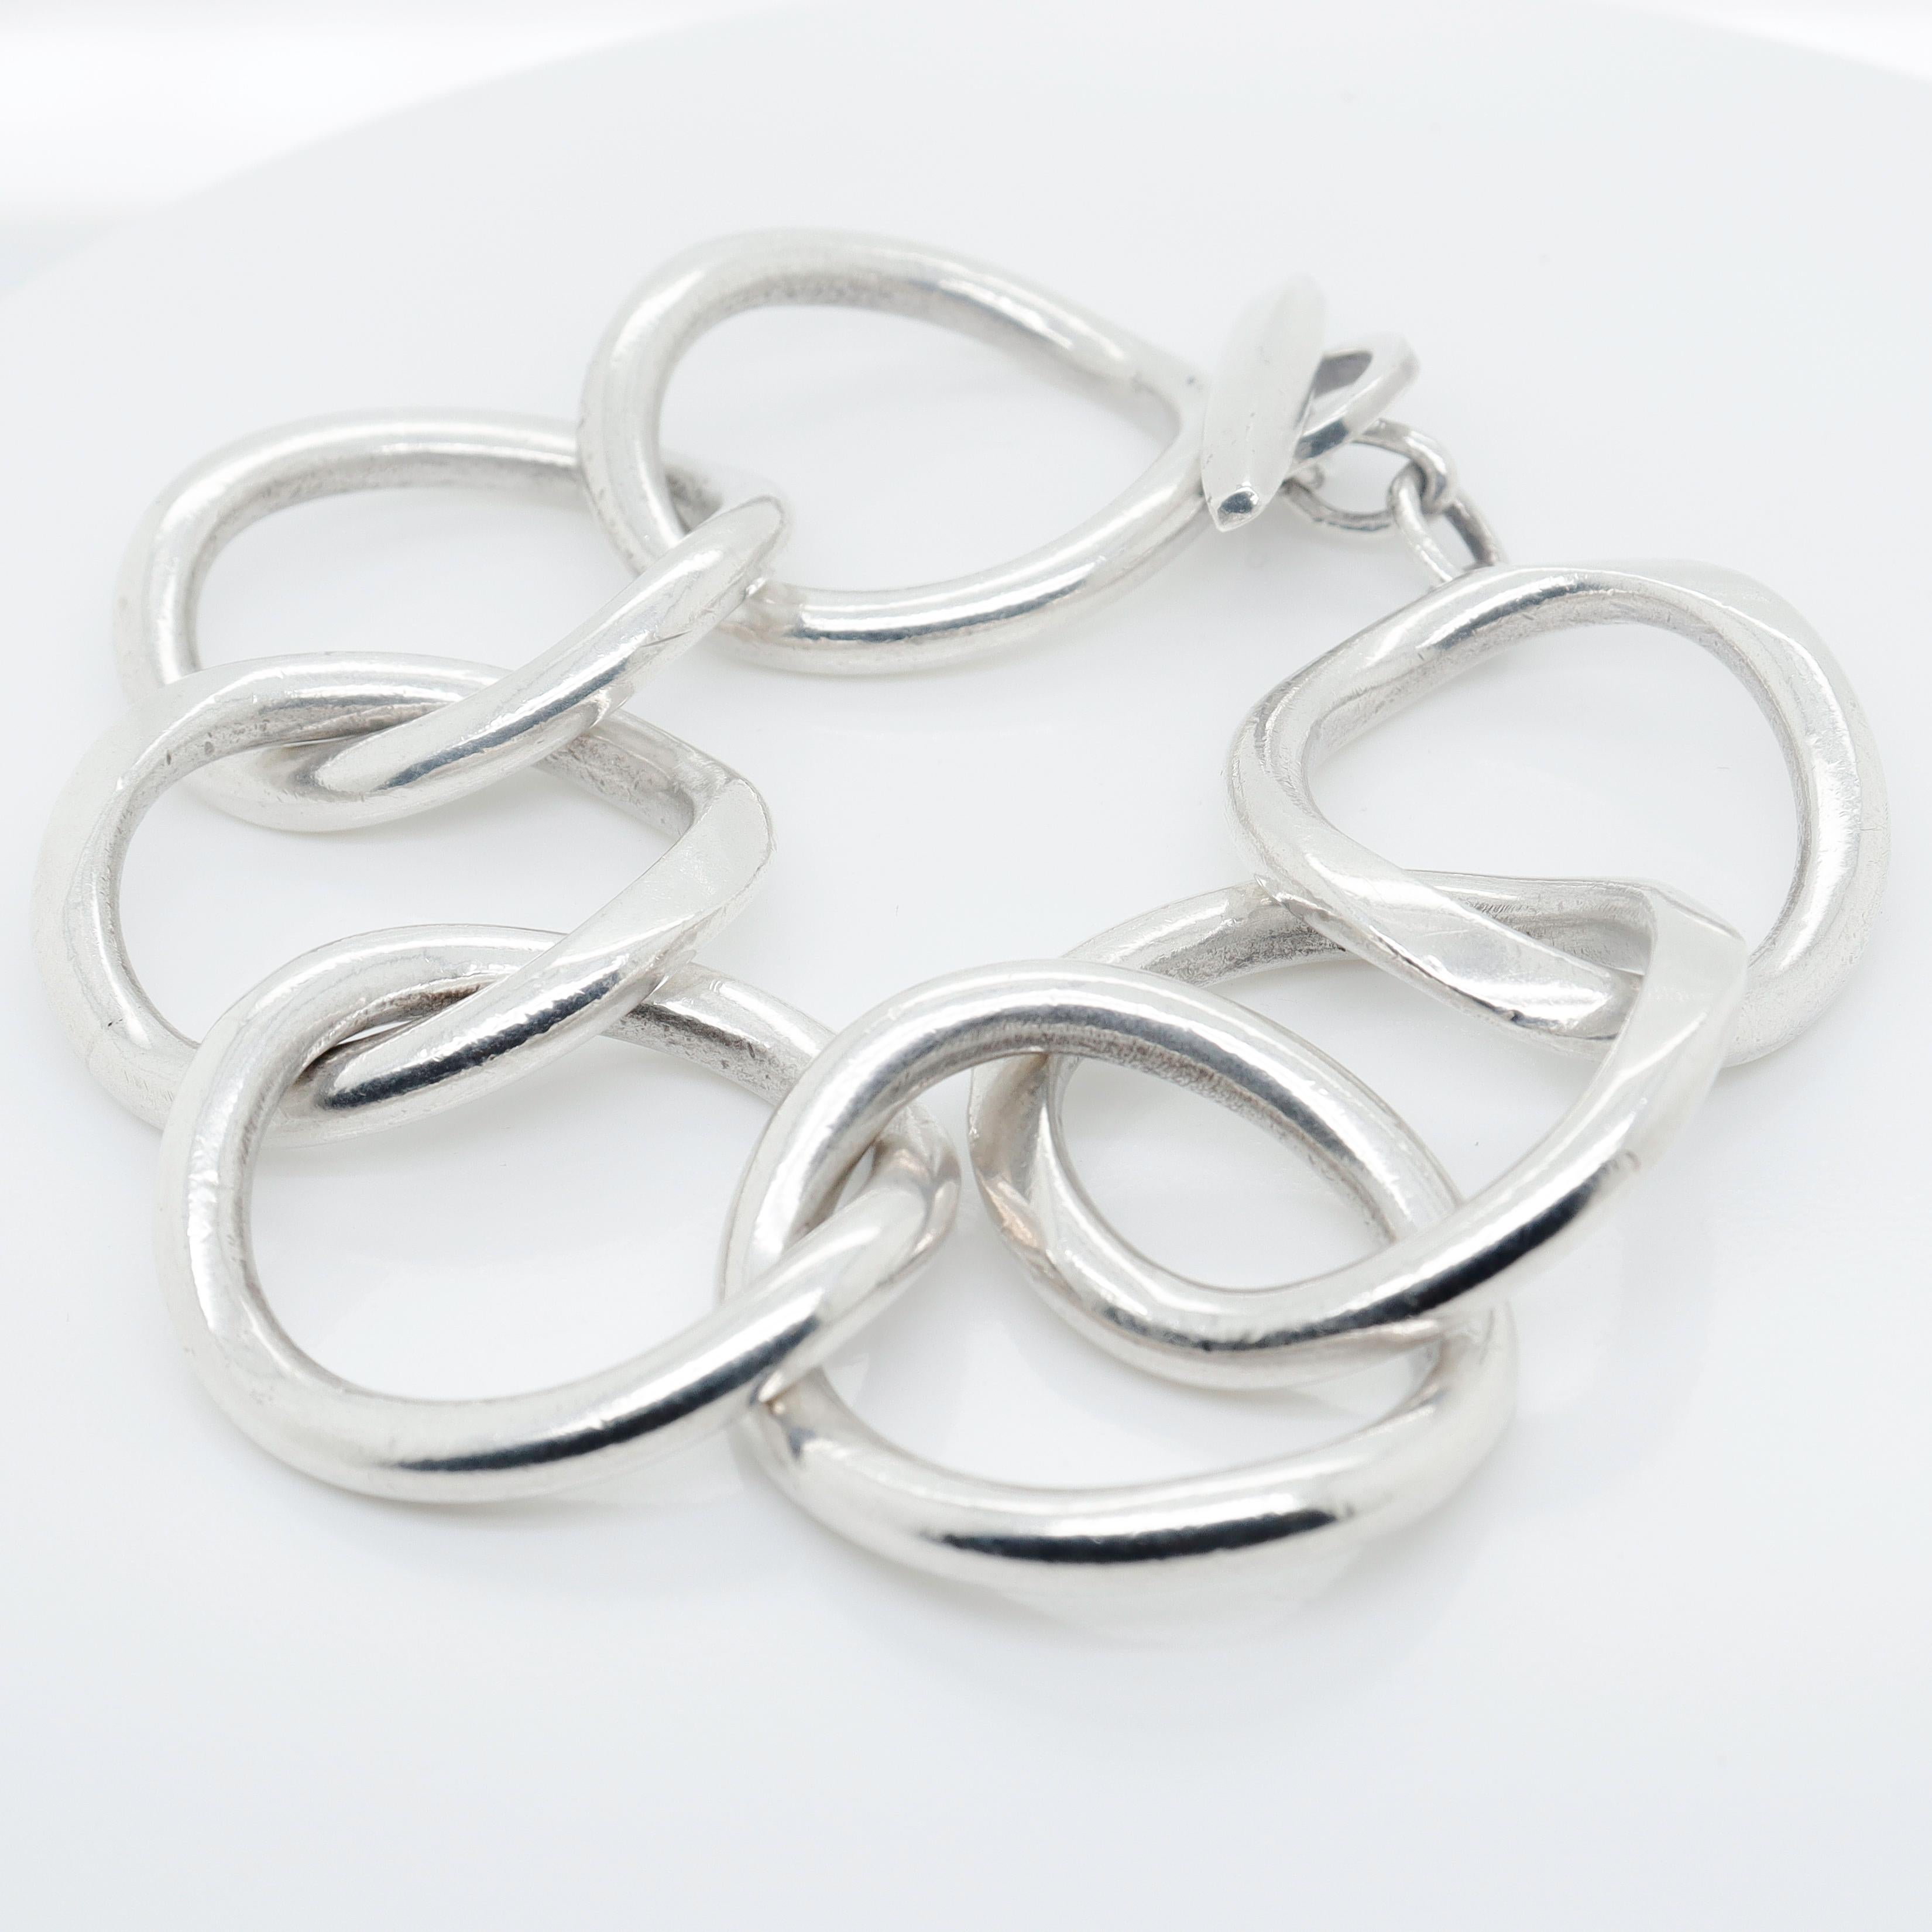 Modernist Signed Handmade Danish Modern Sterling Silver Large Link Bracelet by Randers For Sale